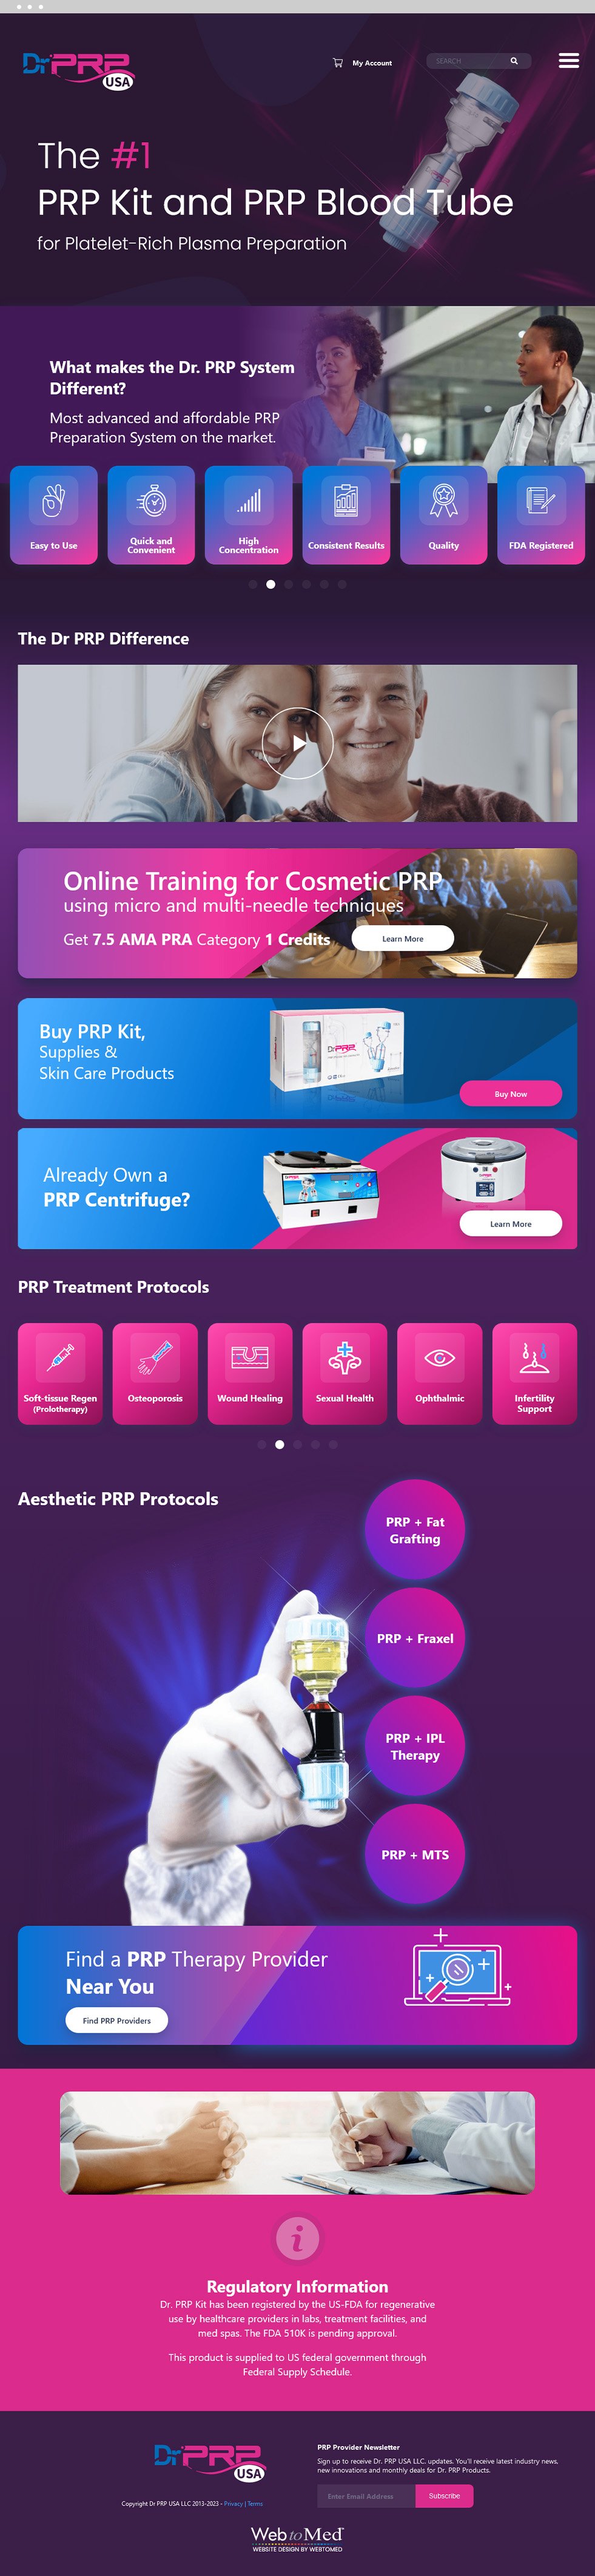 Medical E-Commerce Website Design - Dr. PRP USA, LLC - Homepage